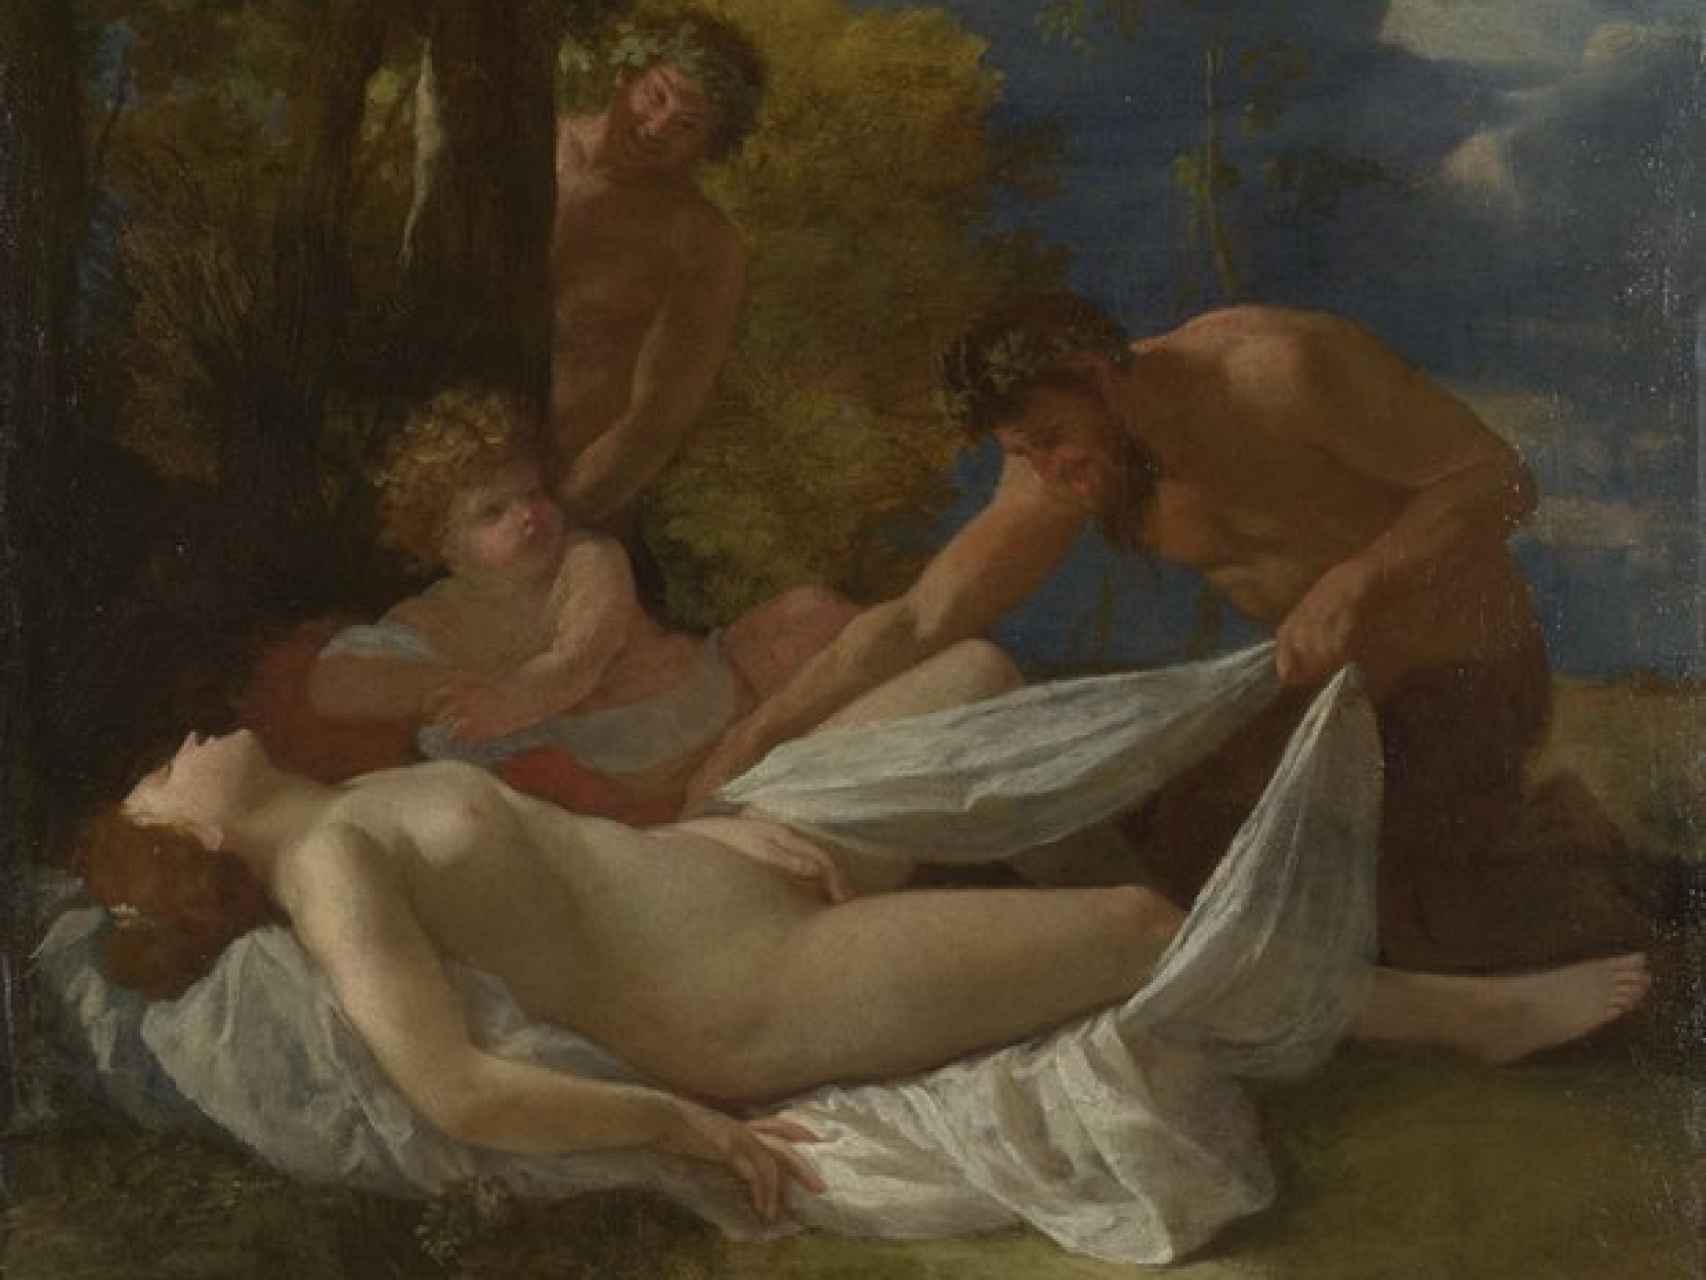 La ninfa y los sátiros (1627), de Nicolas Poussin.